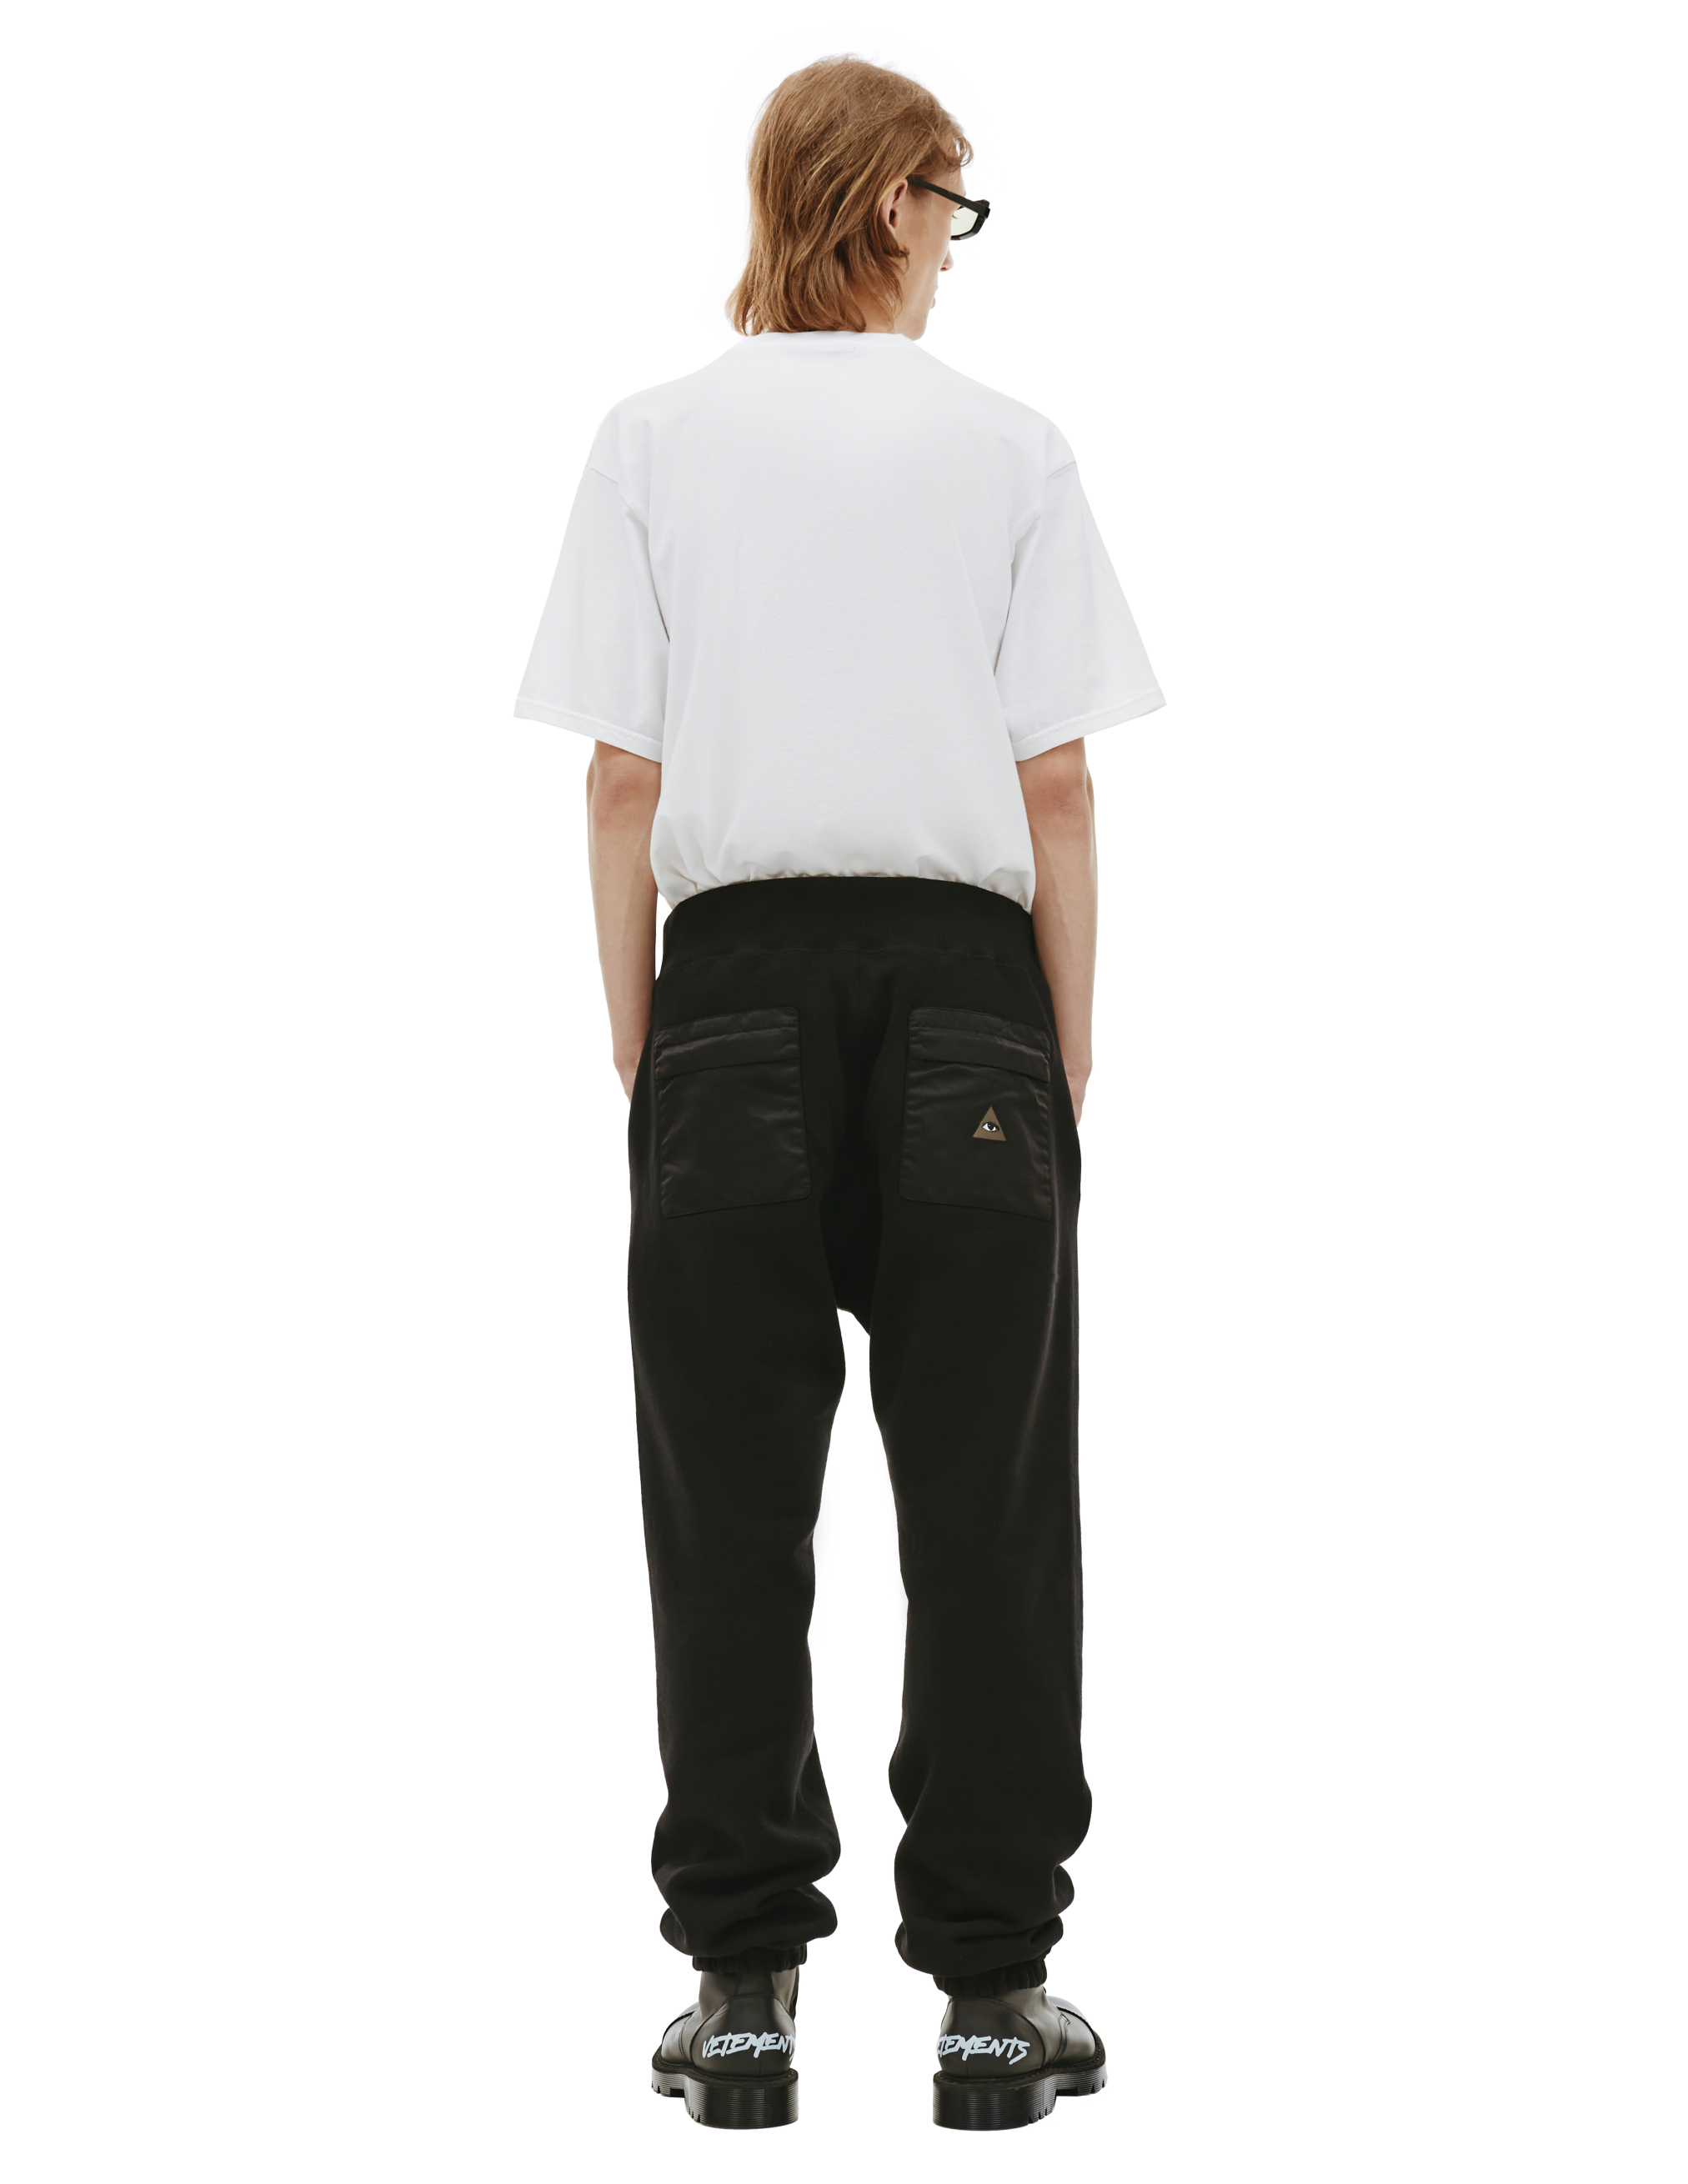 Спортивные брюки с вышивкой на кармане Undercover UC2B4503/3, размер 5 UC2B4503/3 - фото 3